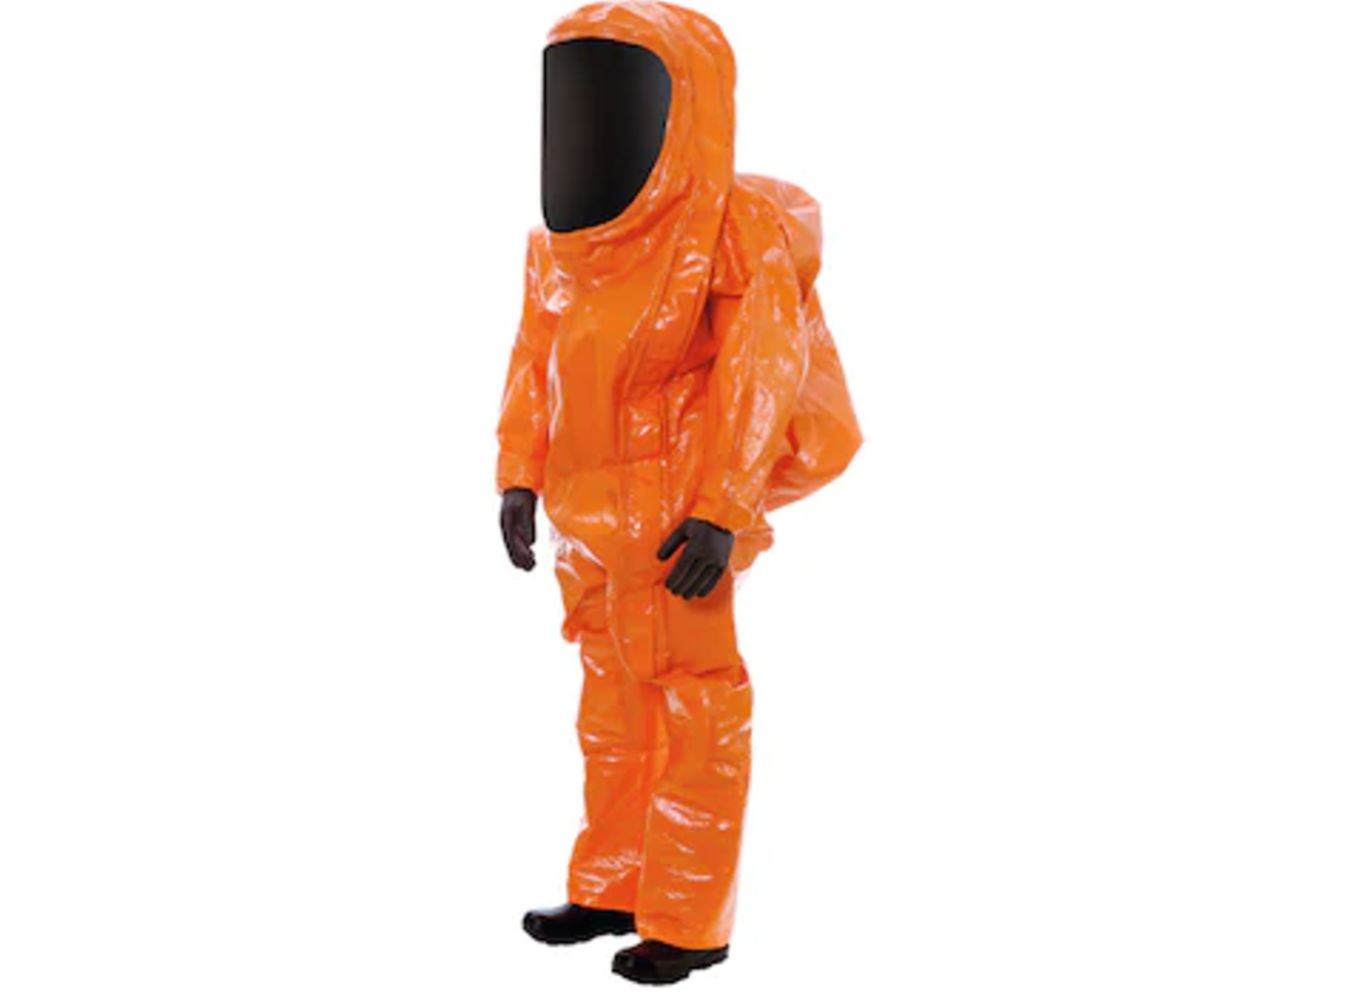 Drager PPE Hazmat suits